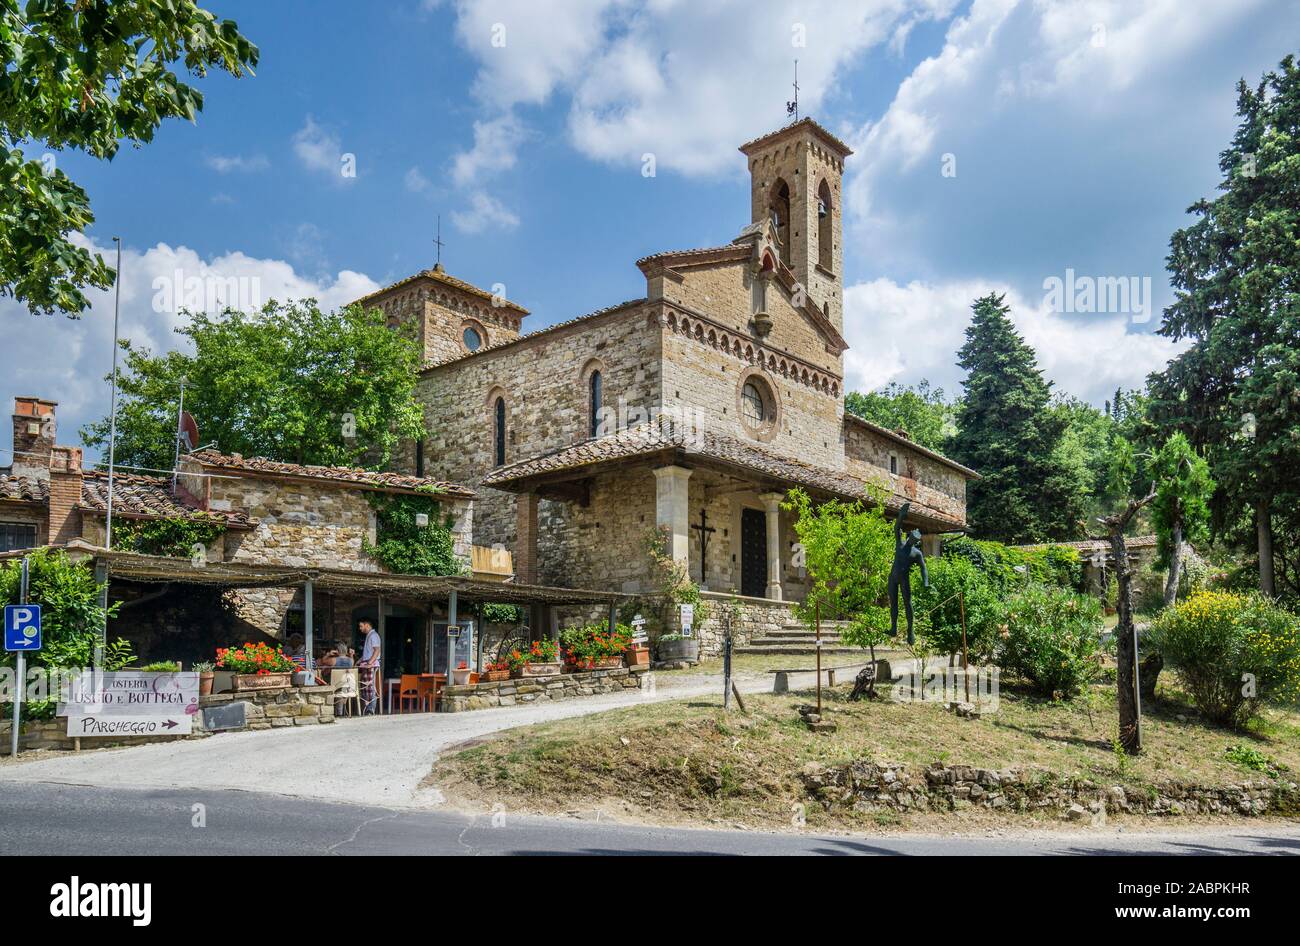 L'ancienne église médiévale de San Miniato Sicelle avec un aspect néo-gothique à Castellina in Chianti, dans la région rurale de Chianti, province du sien Banque D'Images